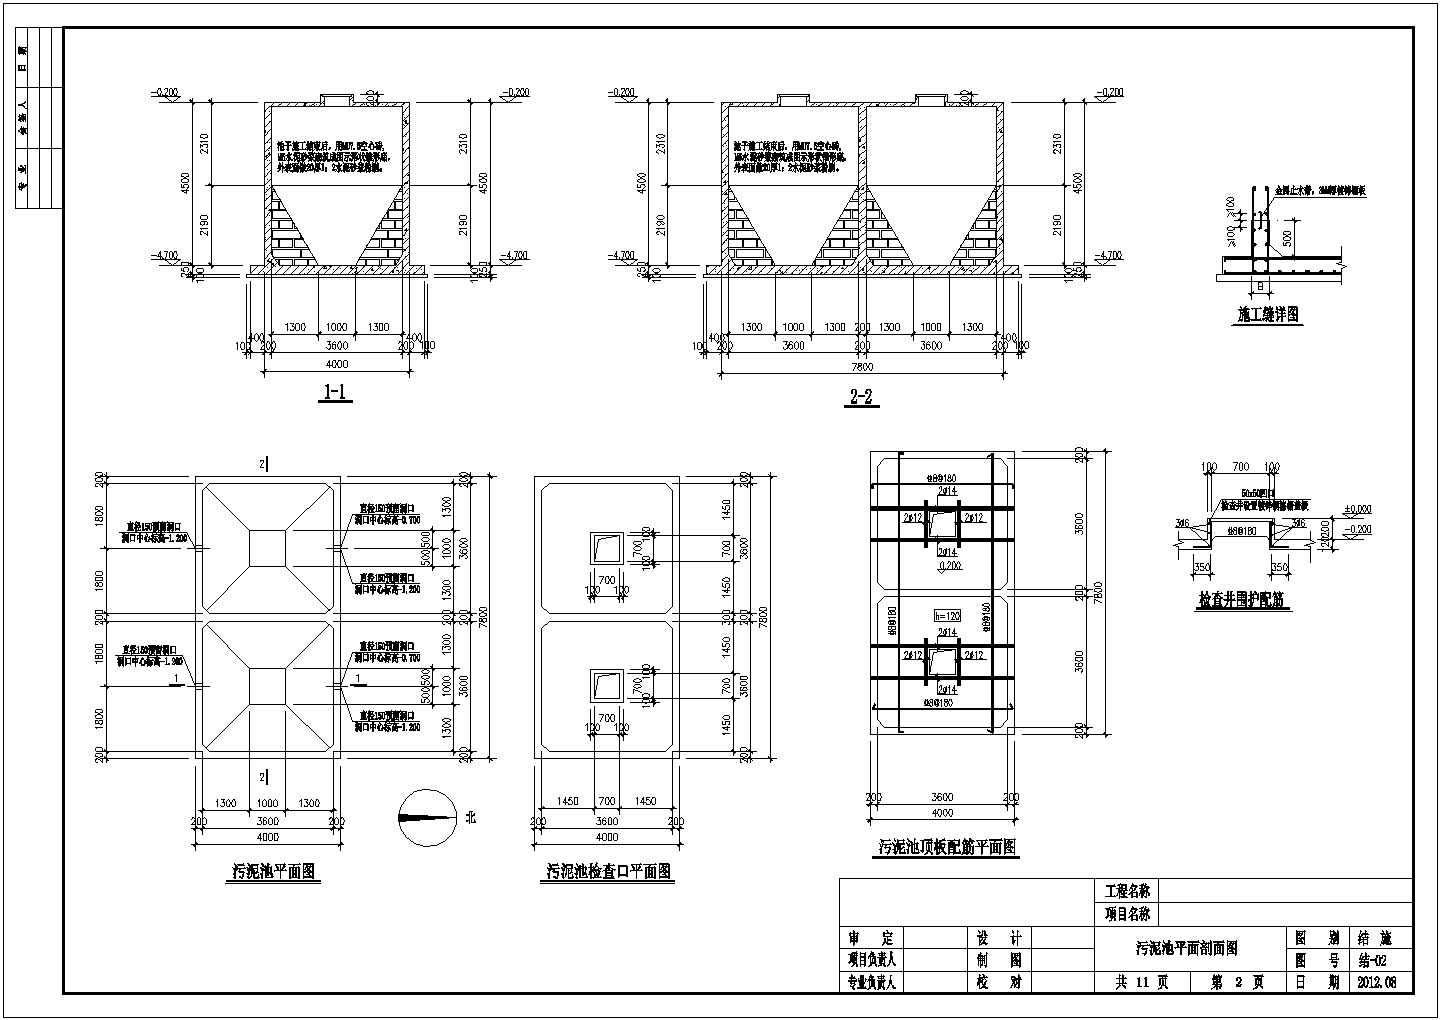 UASB工艺构筑物单体结构配筋图